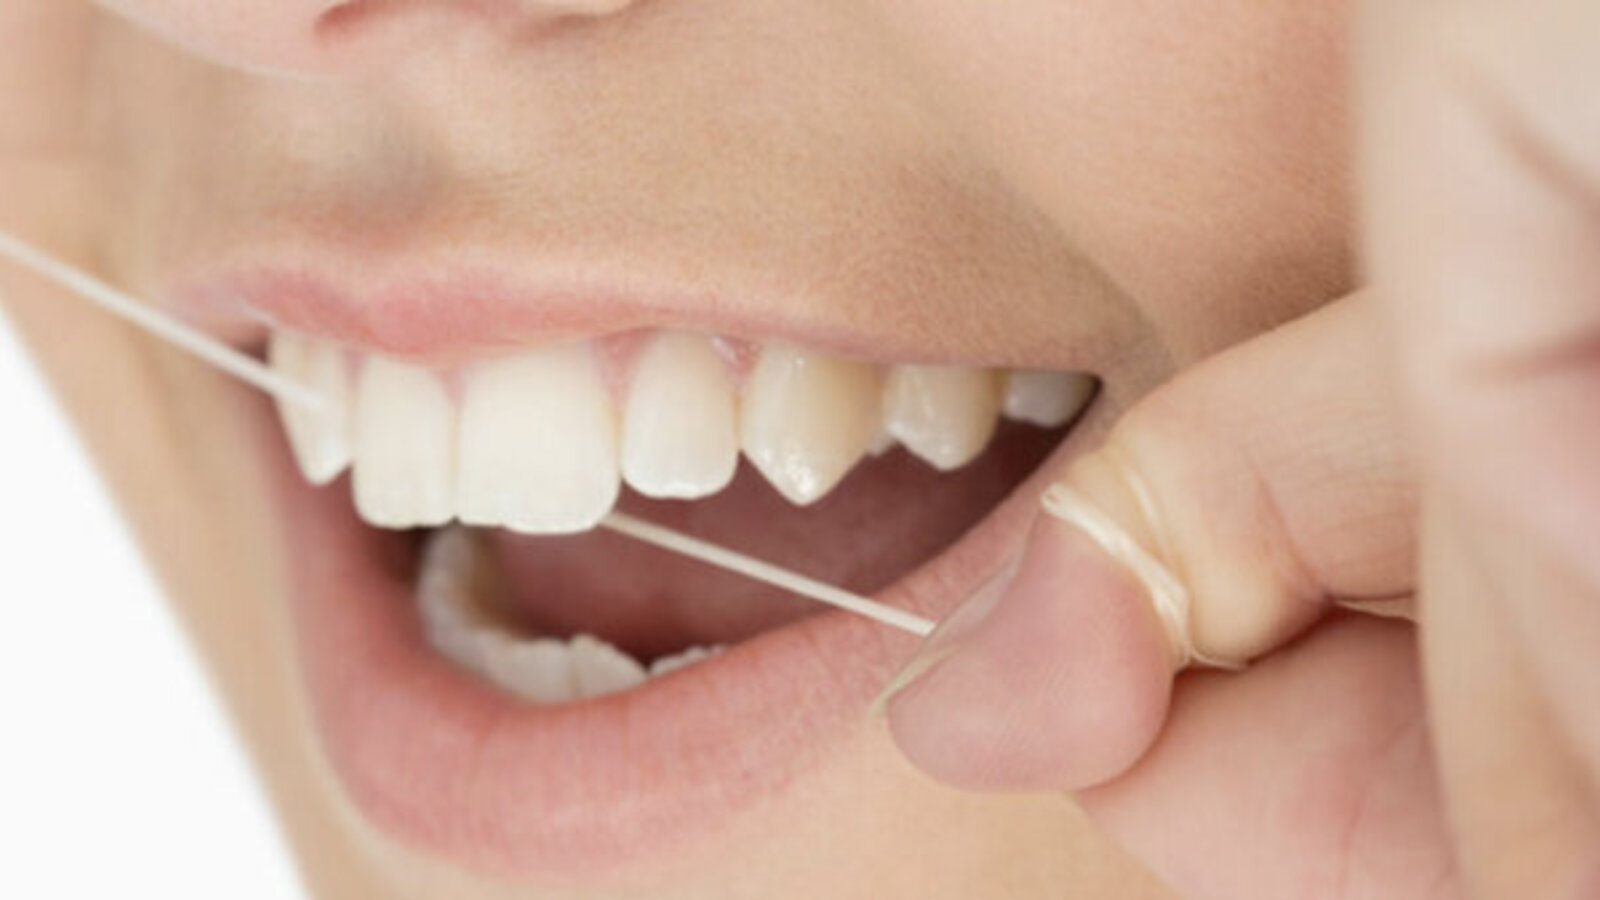 Zahnhygiene ist wichtig, um Karies vorzubeugen. Deshalb empfiehlt die AOK auch mindestens zweimal im Jahr die Zähne professionell reinigen zu lassen.